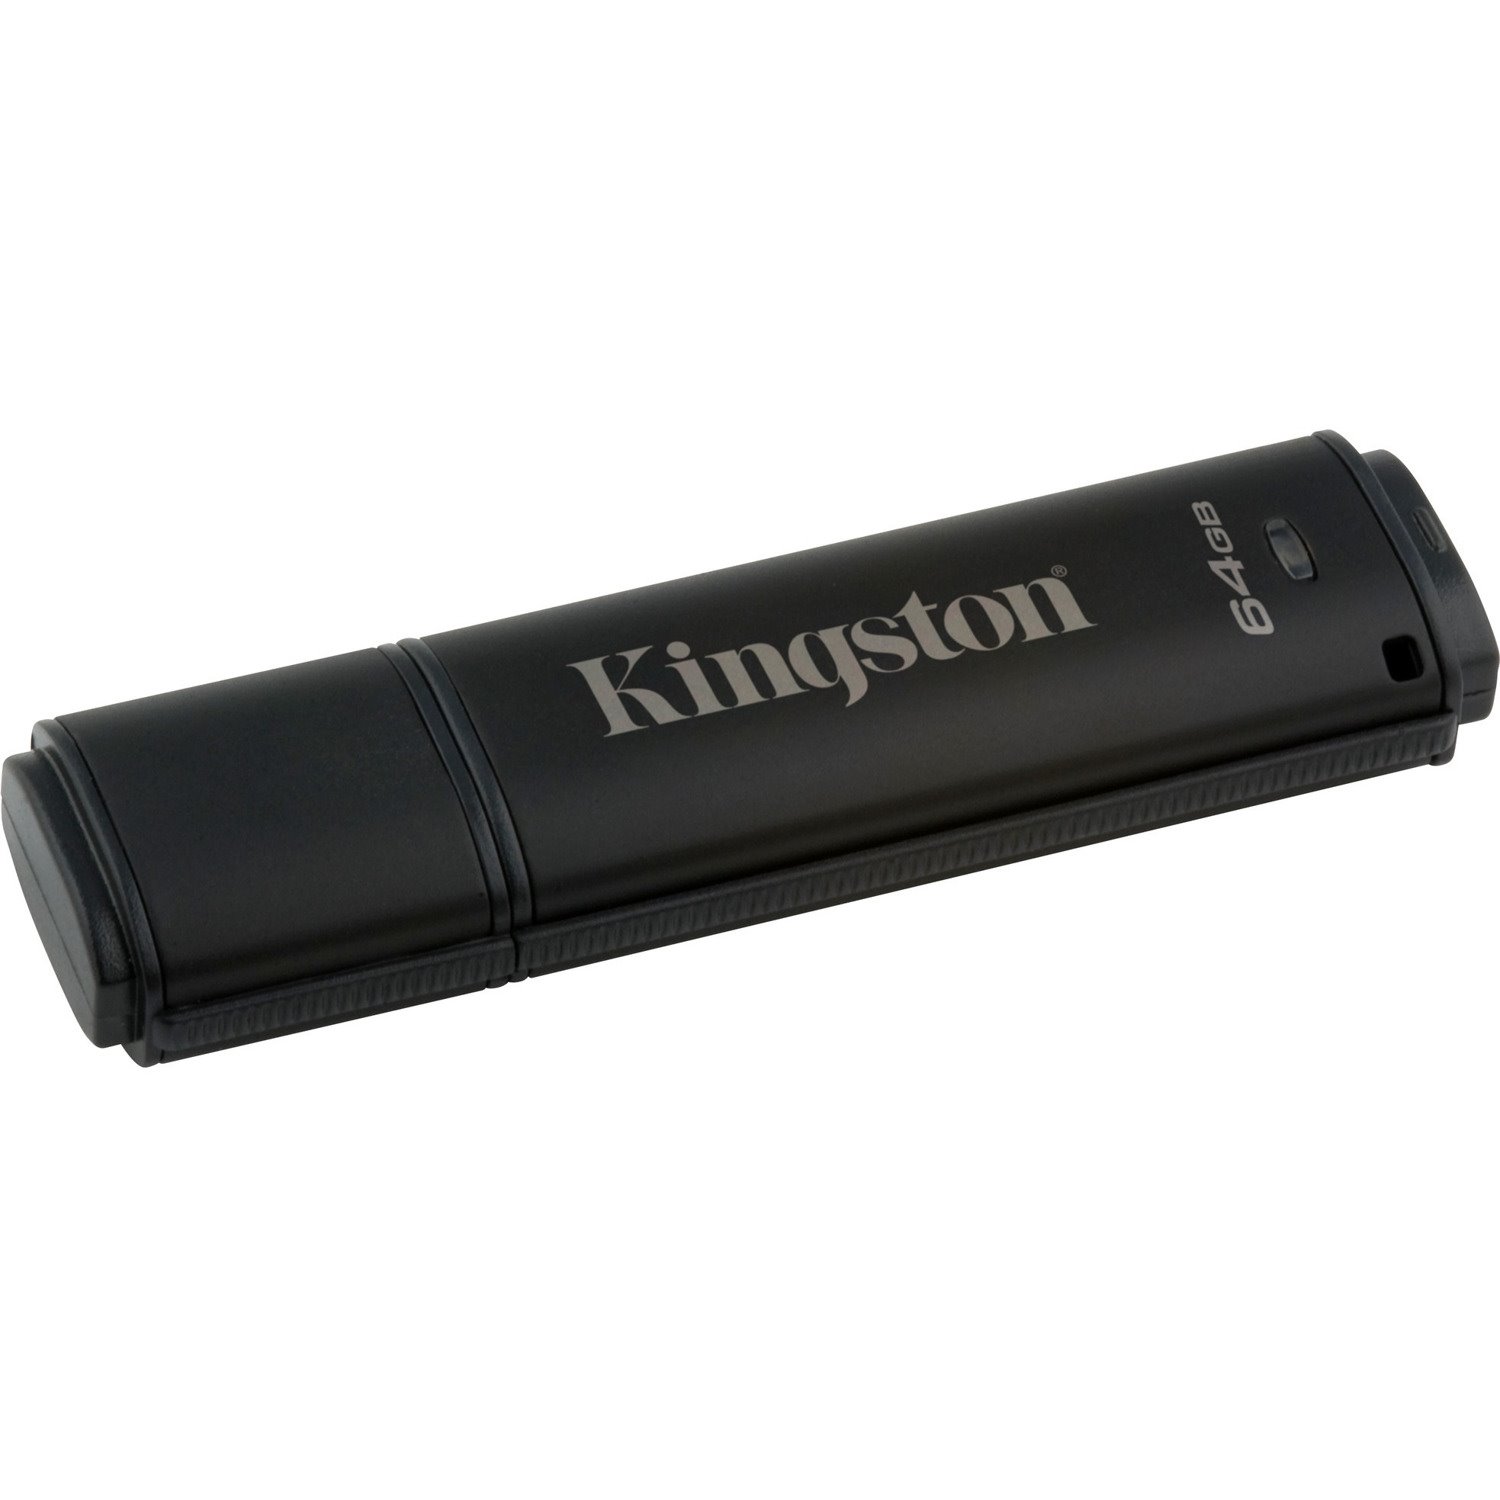 Kingston 64GB USB 3.0 DT4000 G2 256 AES FIPS 140-2 Level 3